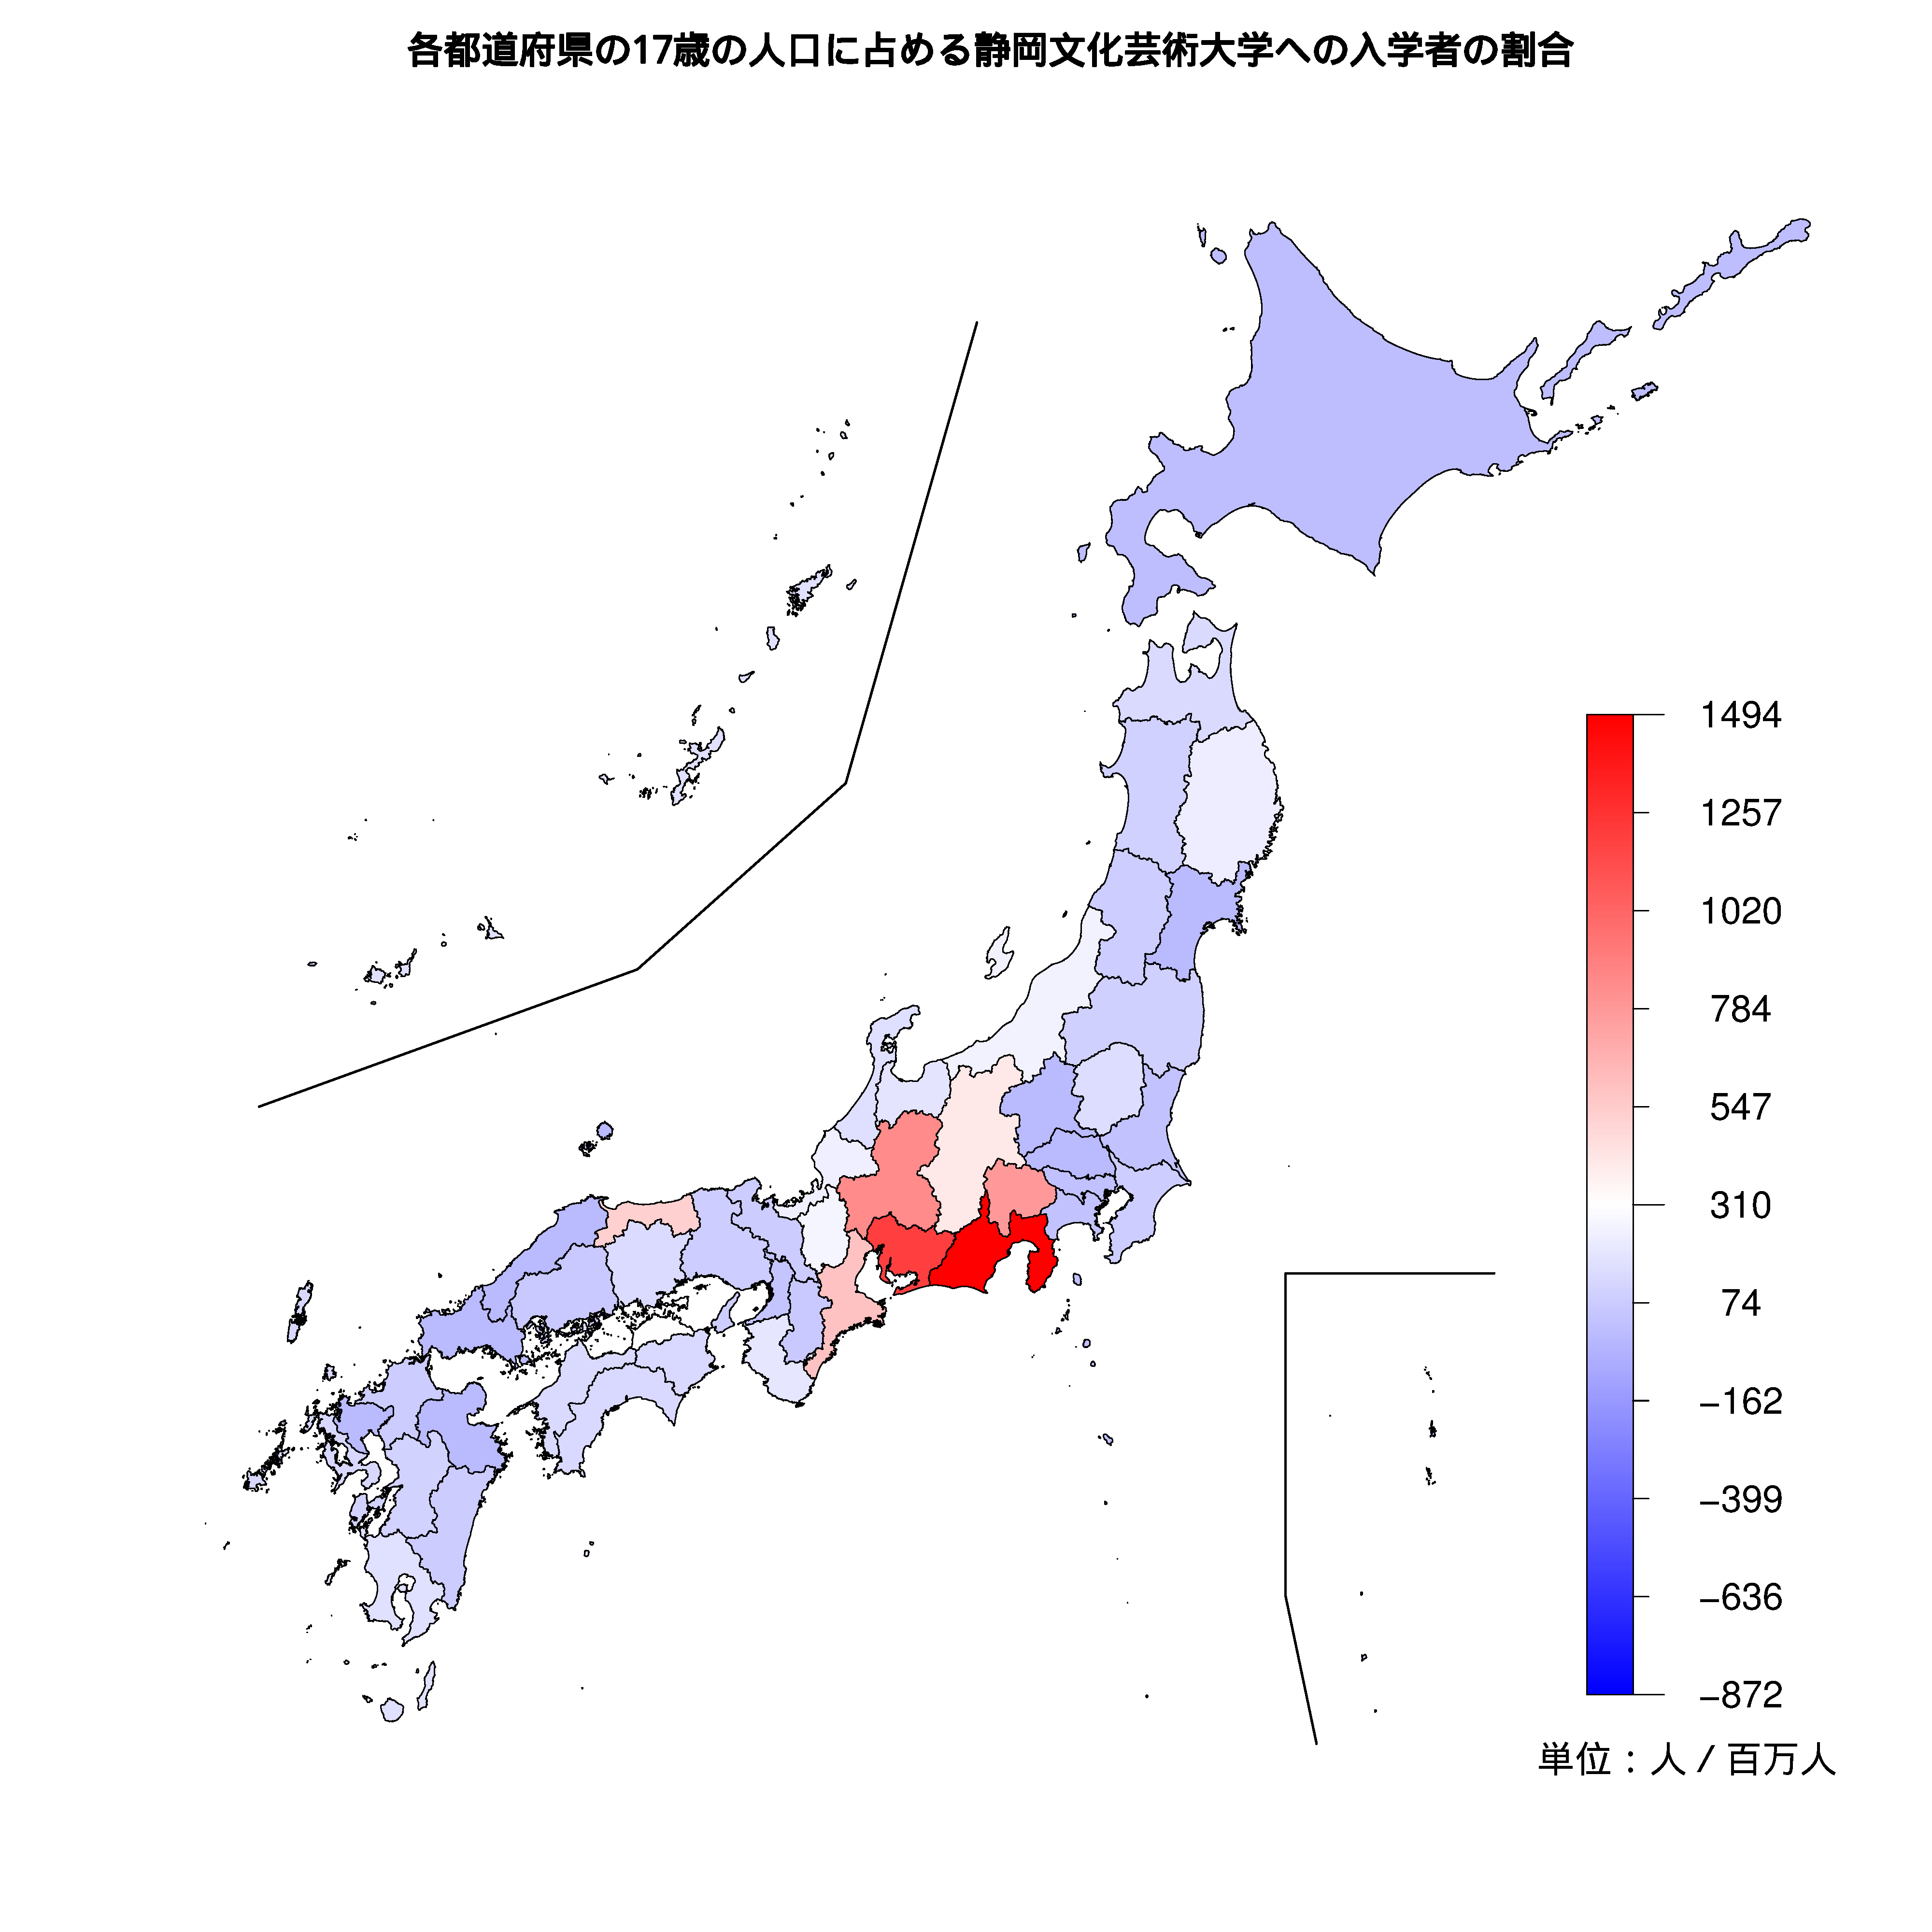 静岡文化芸術大学への入学者が多い都道府県の色分け地図